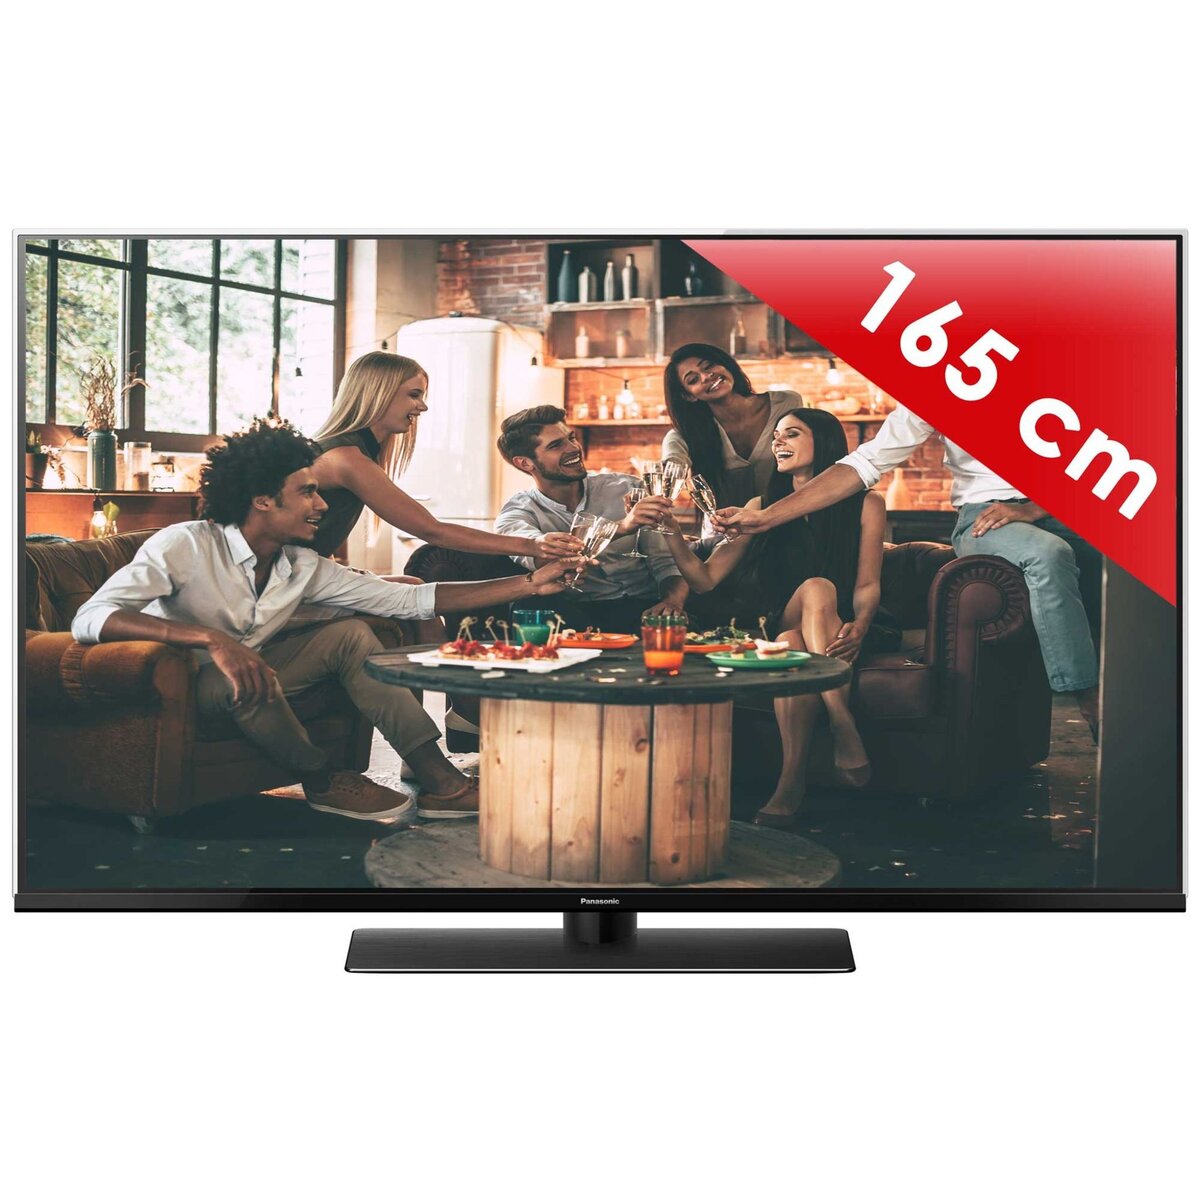 PANASONIC 65FX740E TV LED 4K UHD 164 cm HDR Smart TV